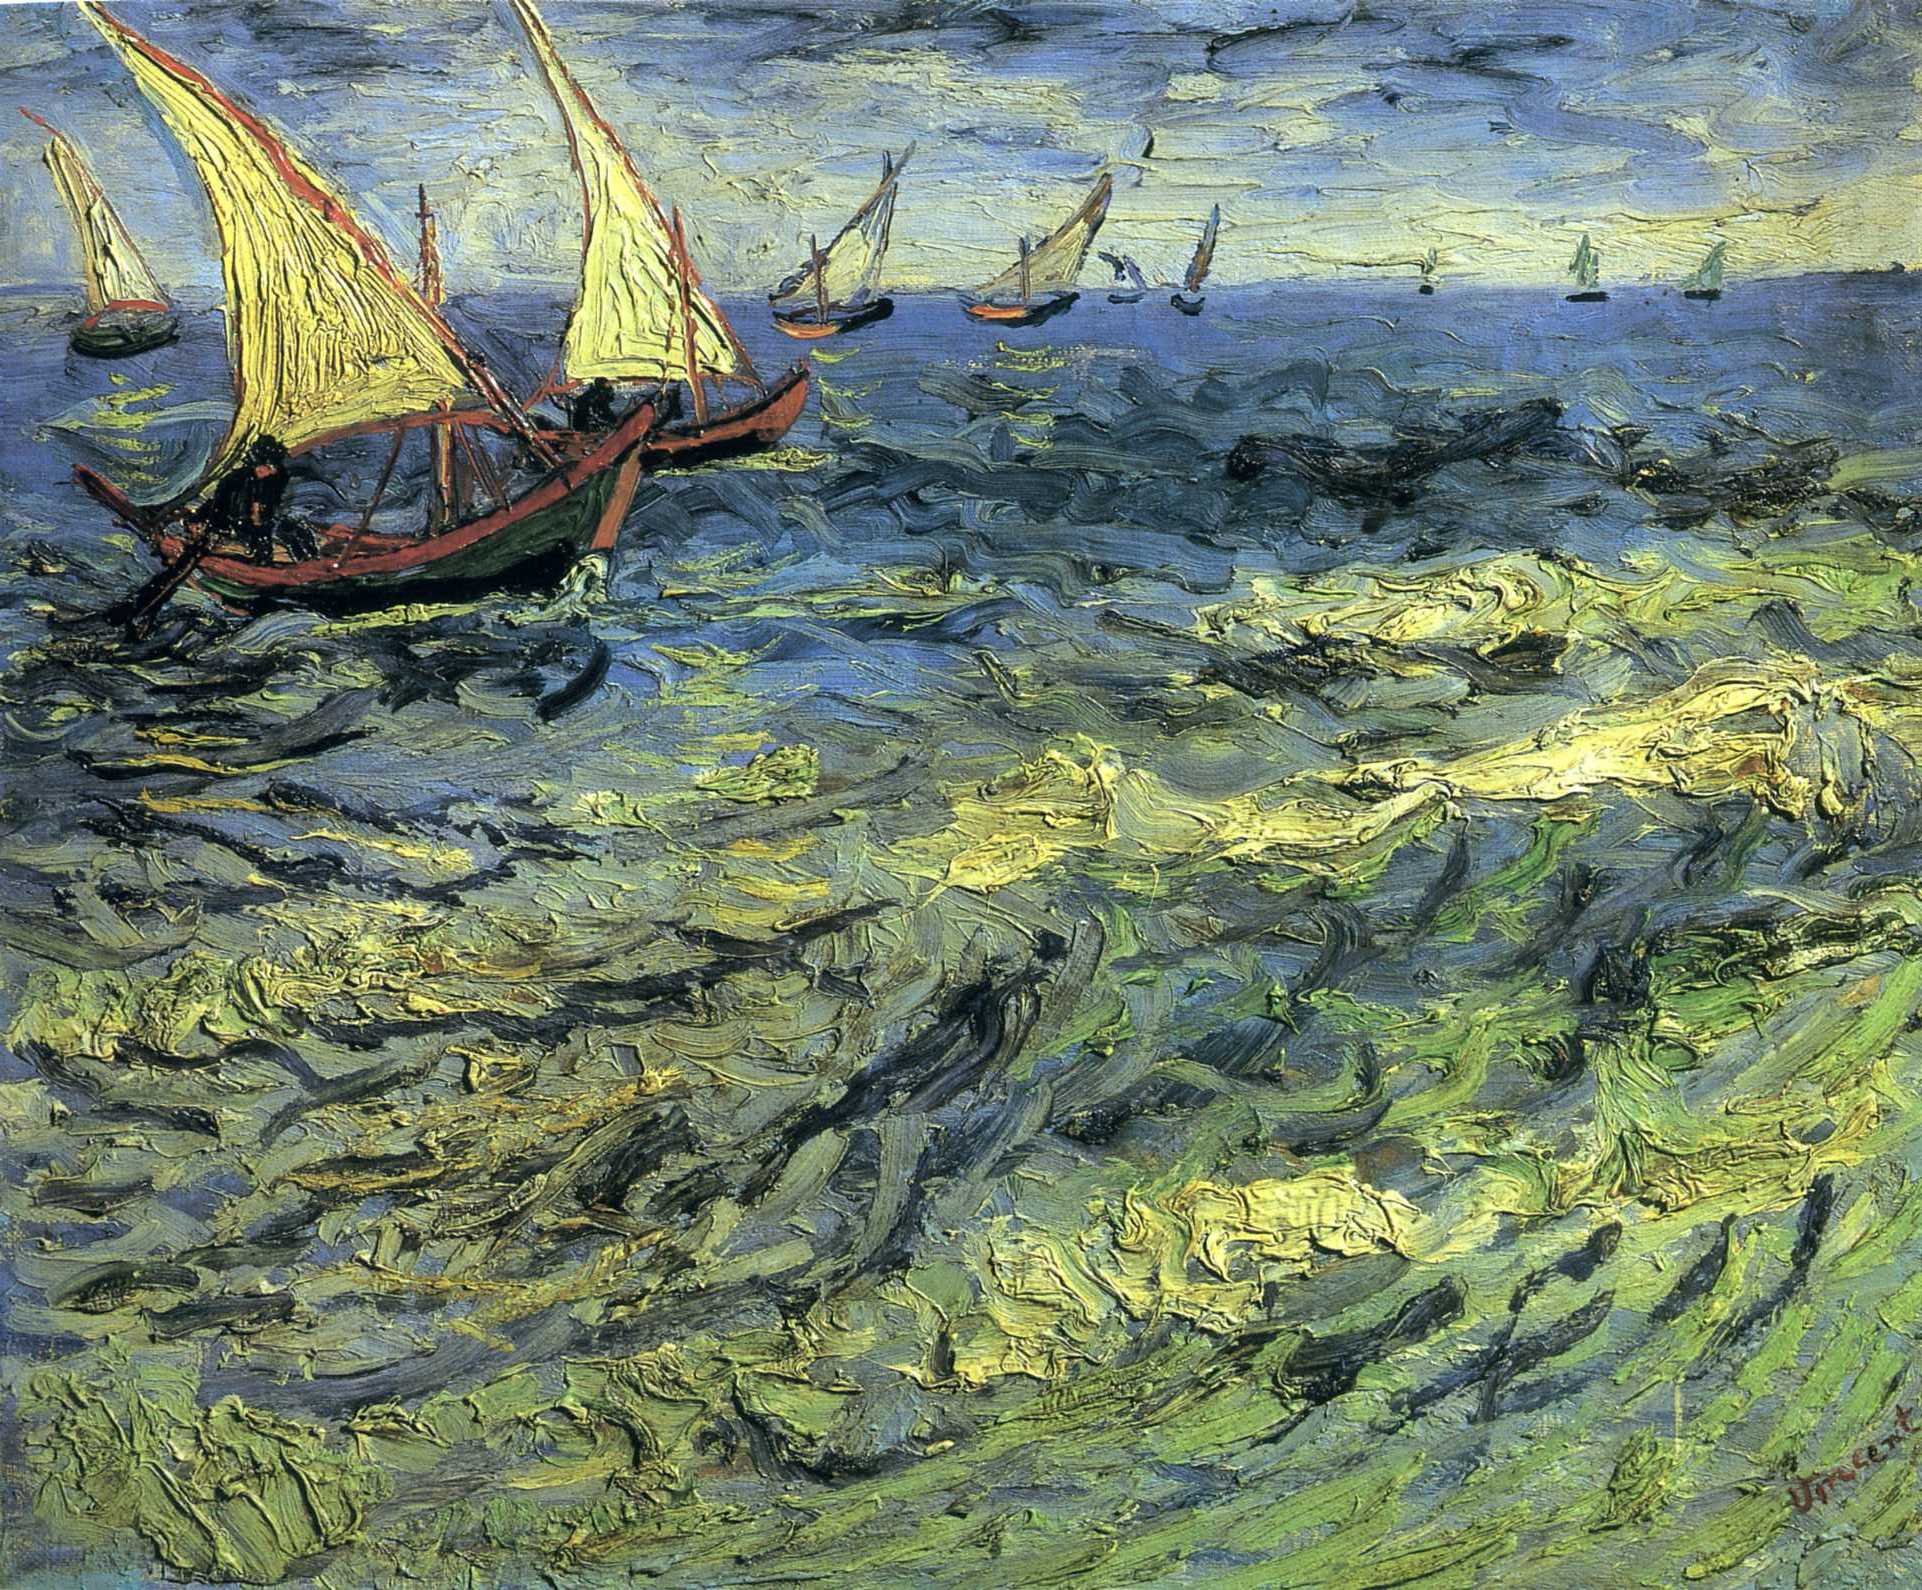 Bateaux de pêche en mer by Vincent van Gogh - 1888 - 44 x 53 cm 